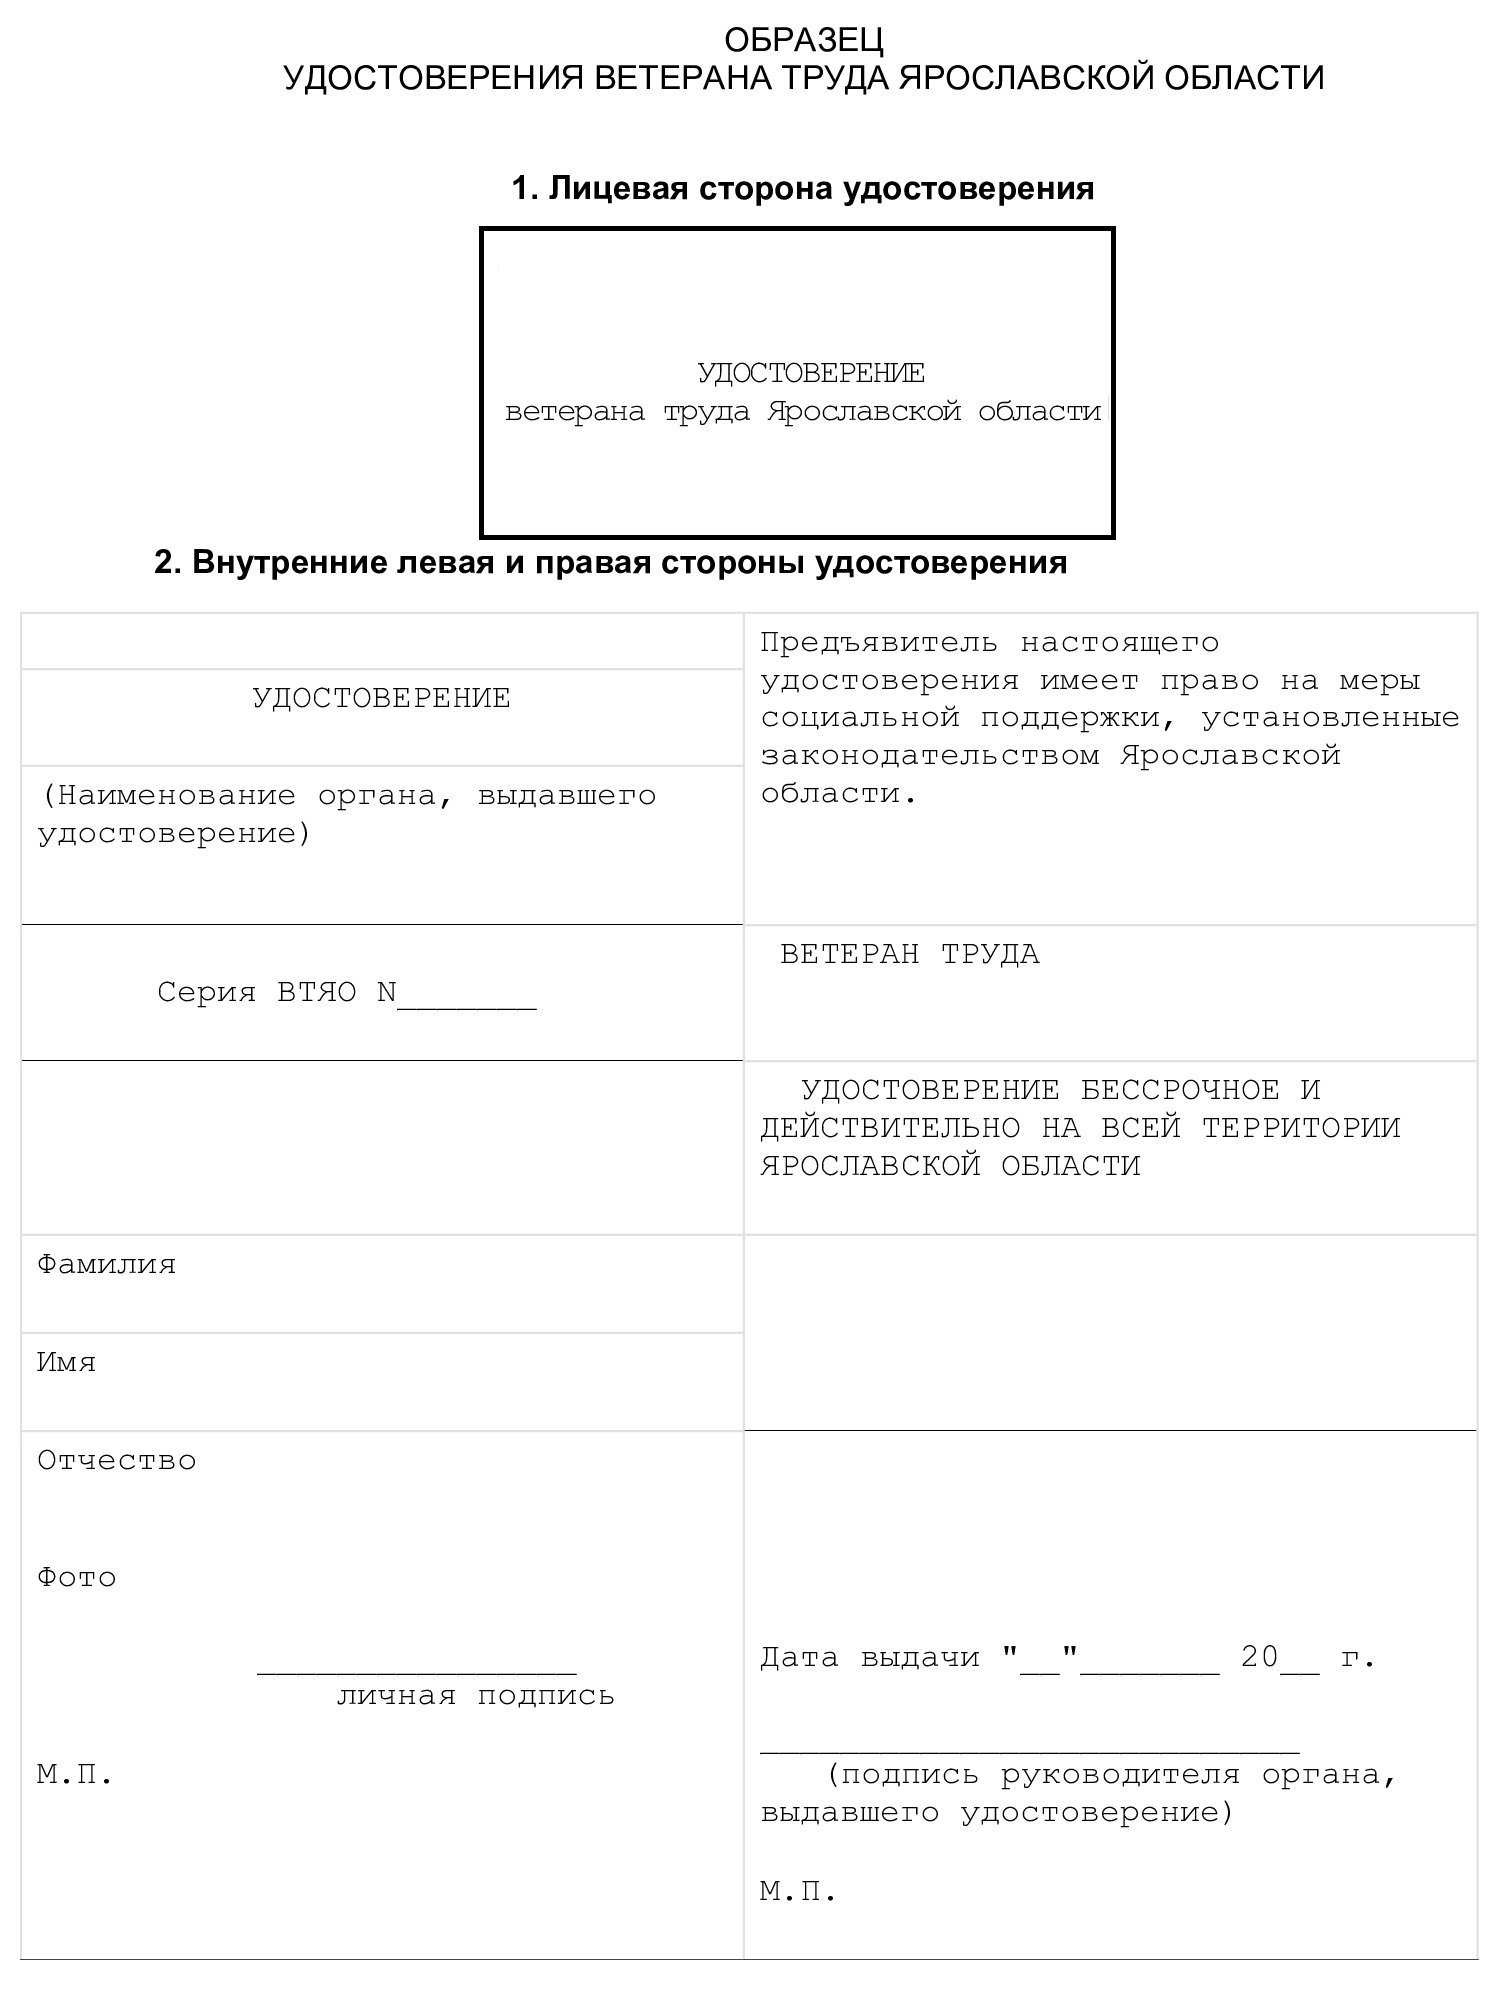 Образец удостоверения «Ветеран труда Ярославской области»